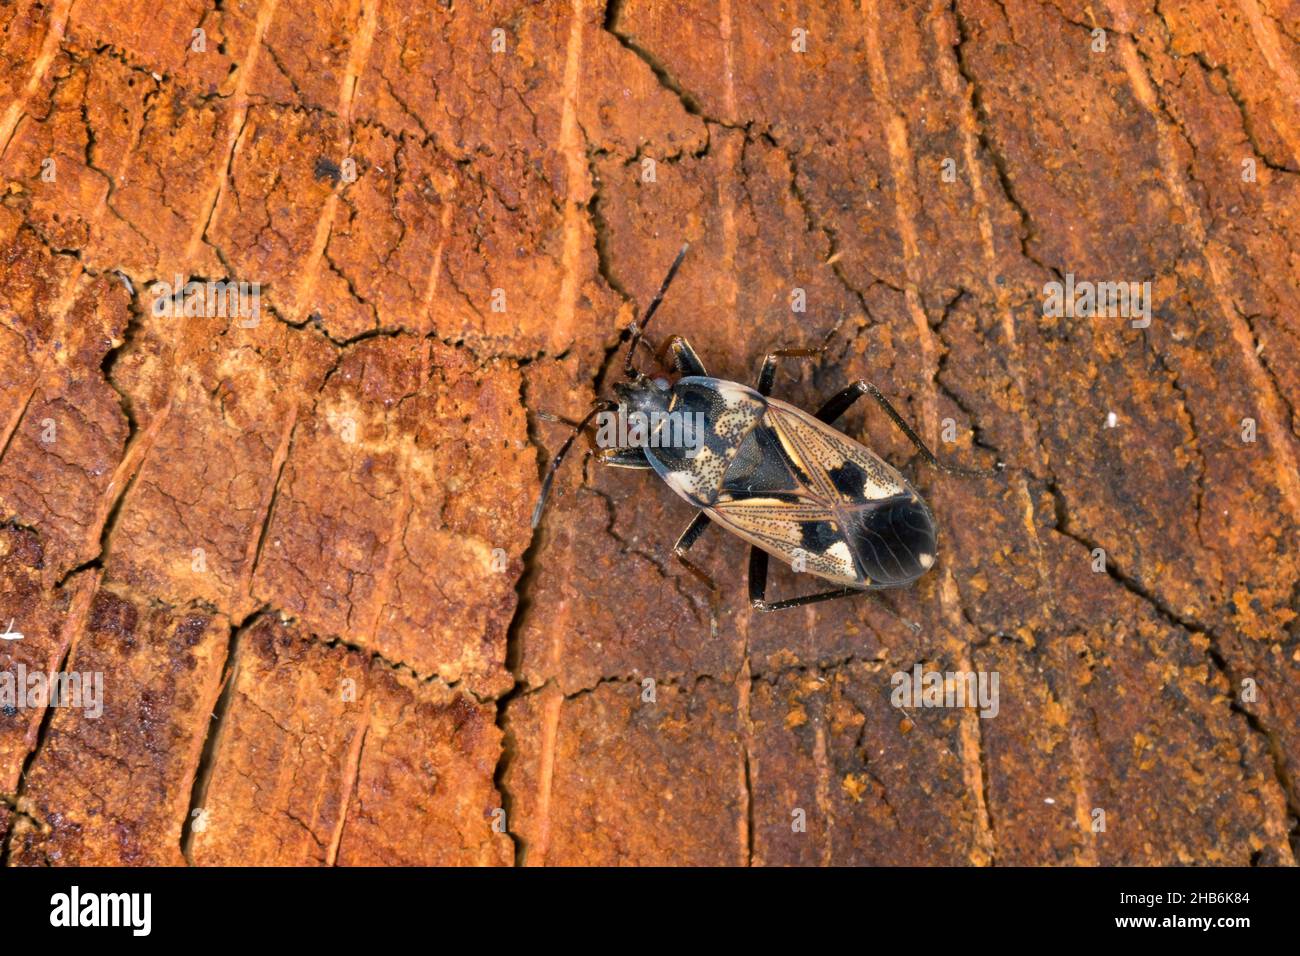 Insecte de l'herbe à lait, insecte de la graine (Rhyparochromus vulgaris), sur bois mort, vue dorsale, Allemagne Banque D'Images